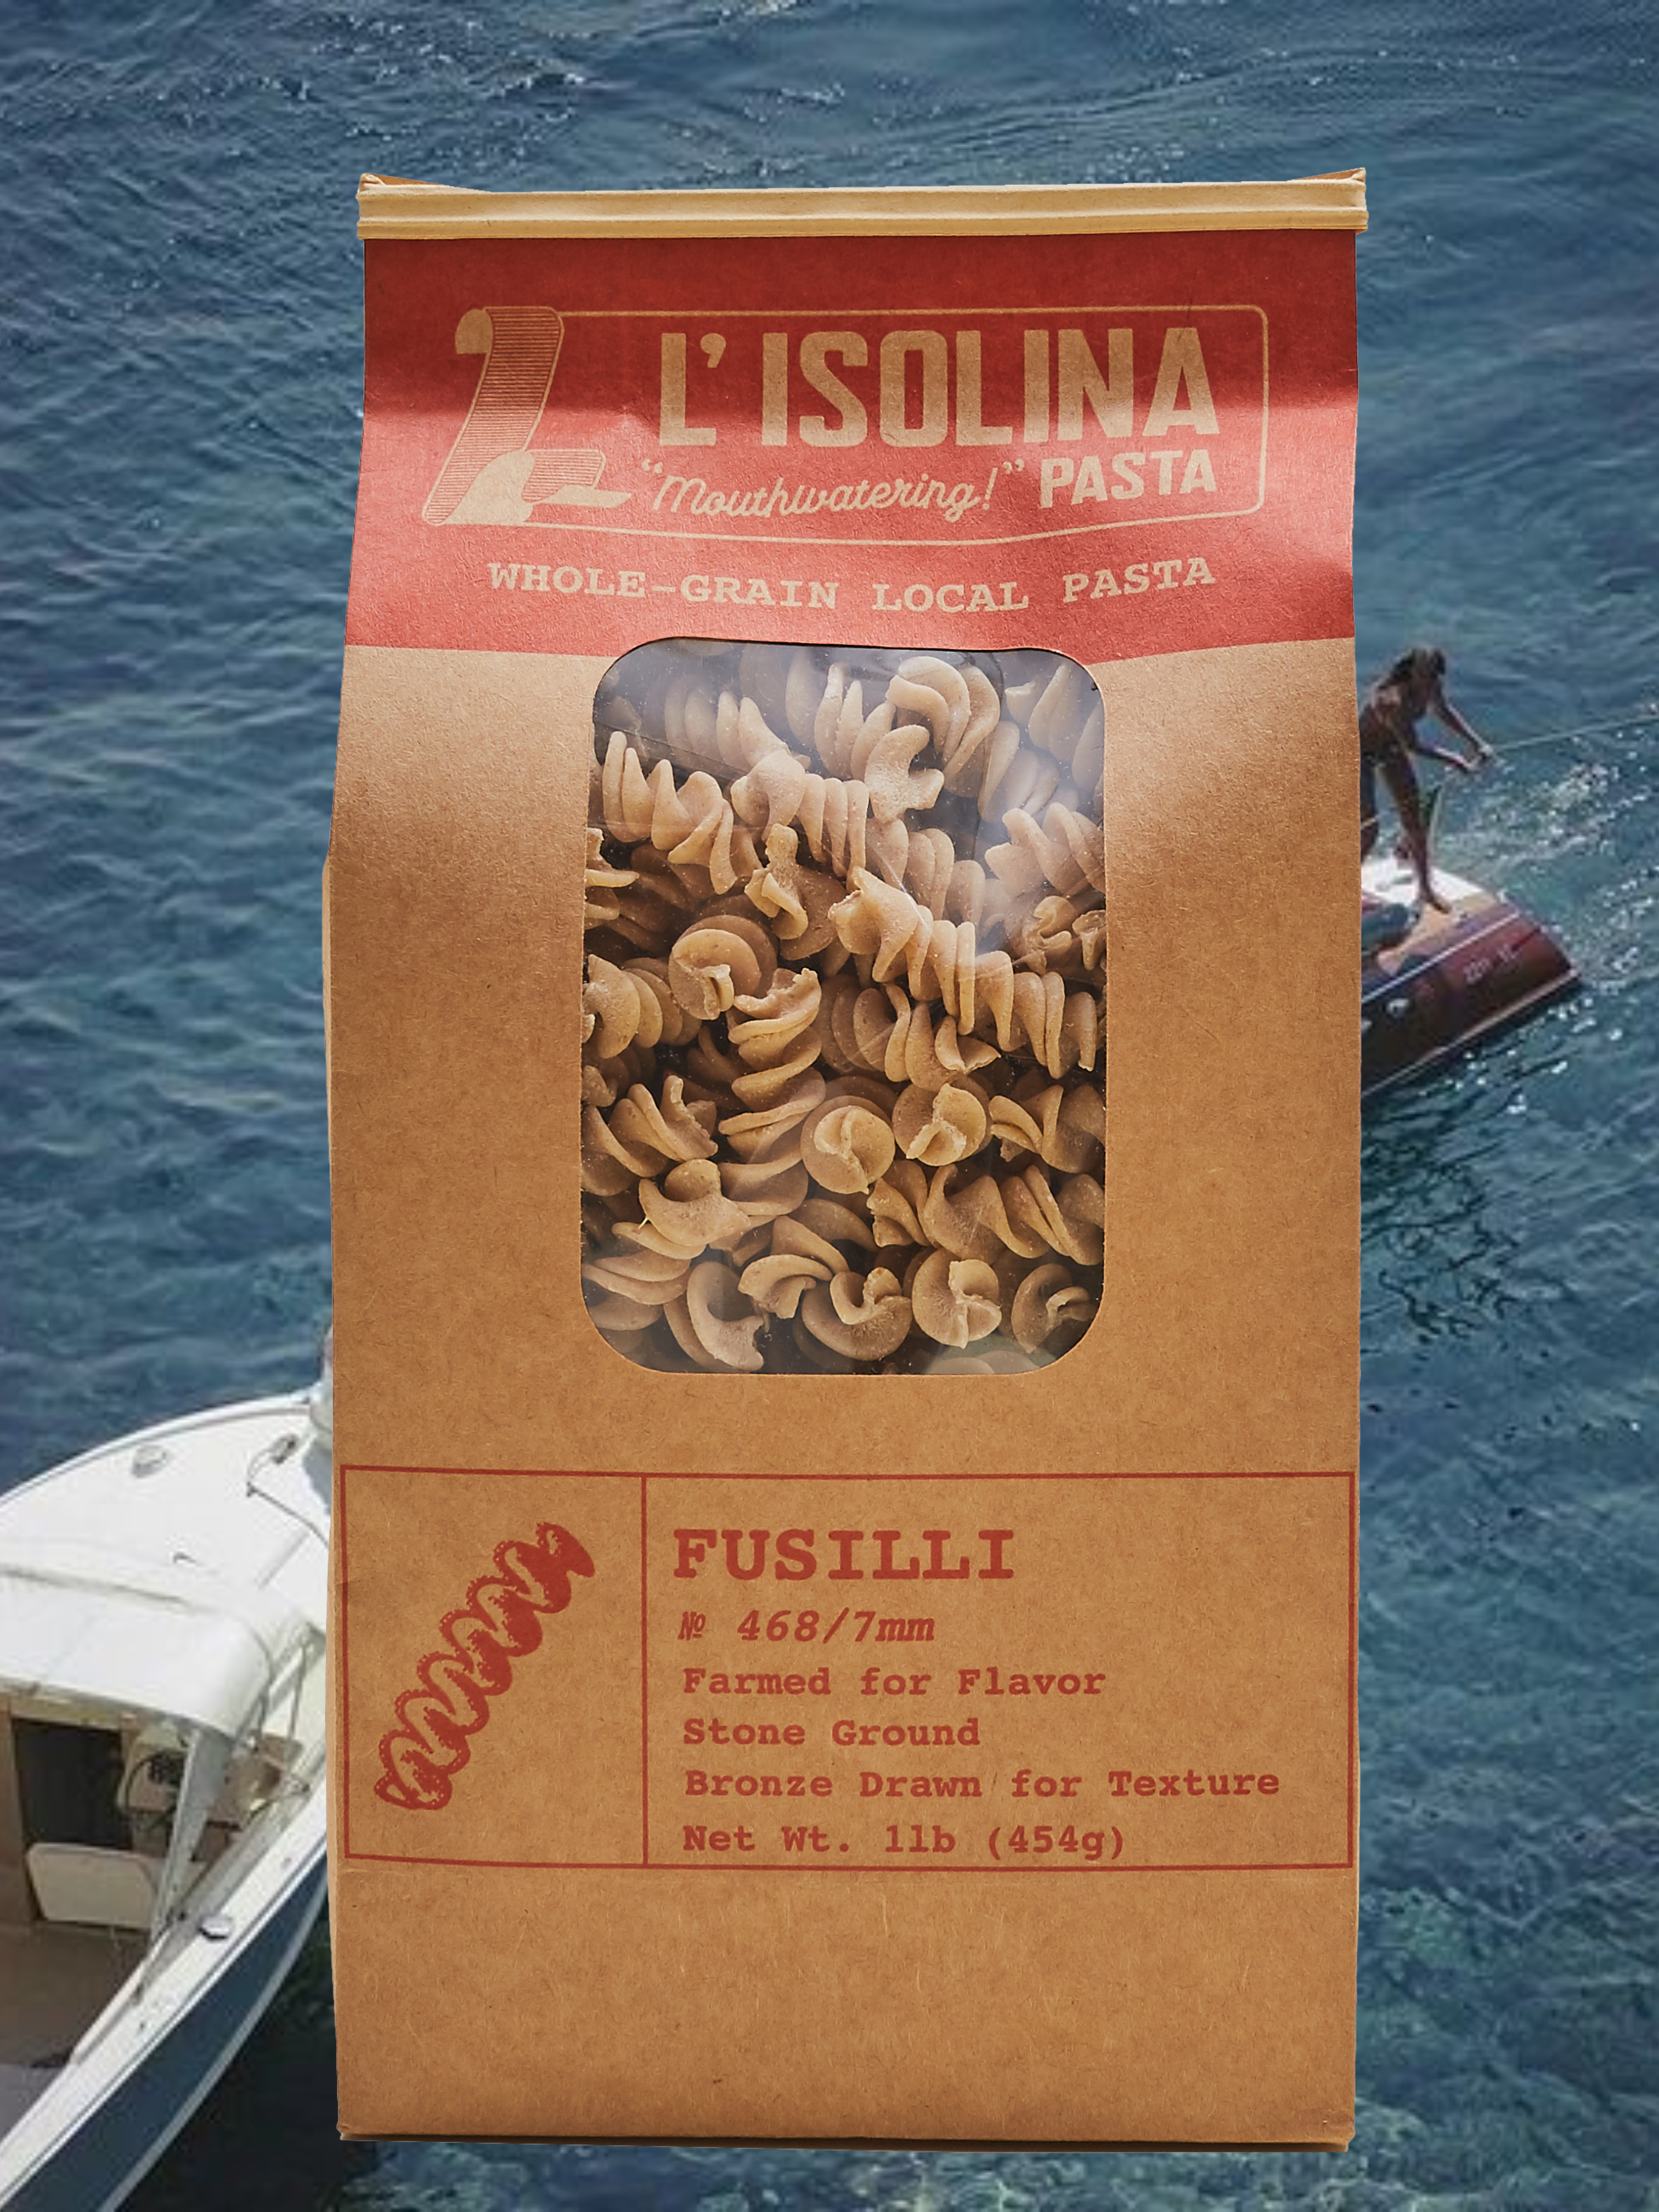 L'Isolina Fusilli